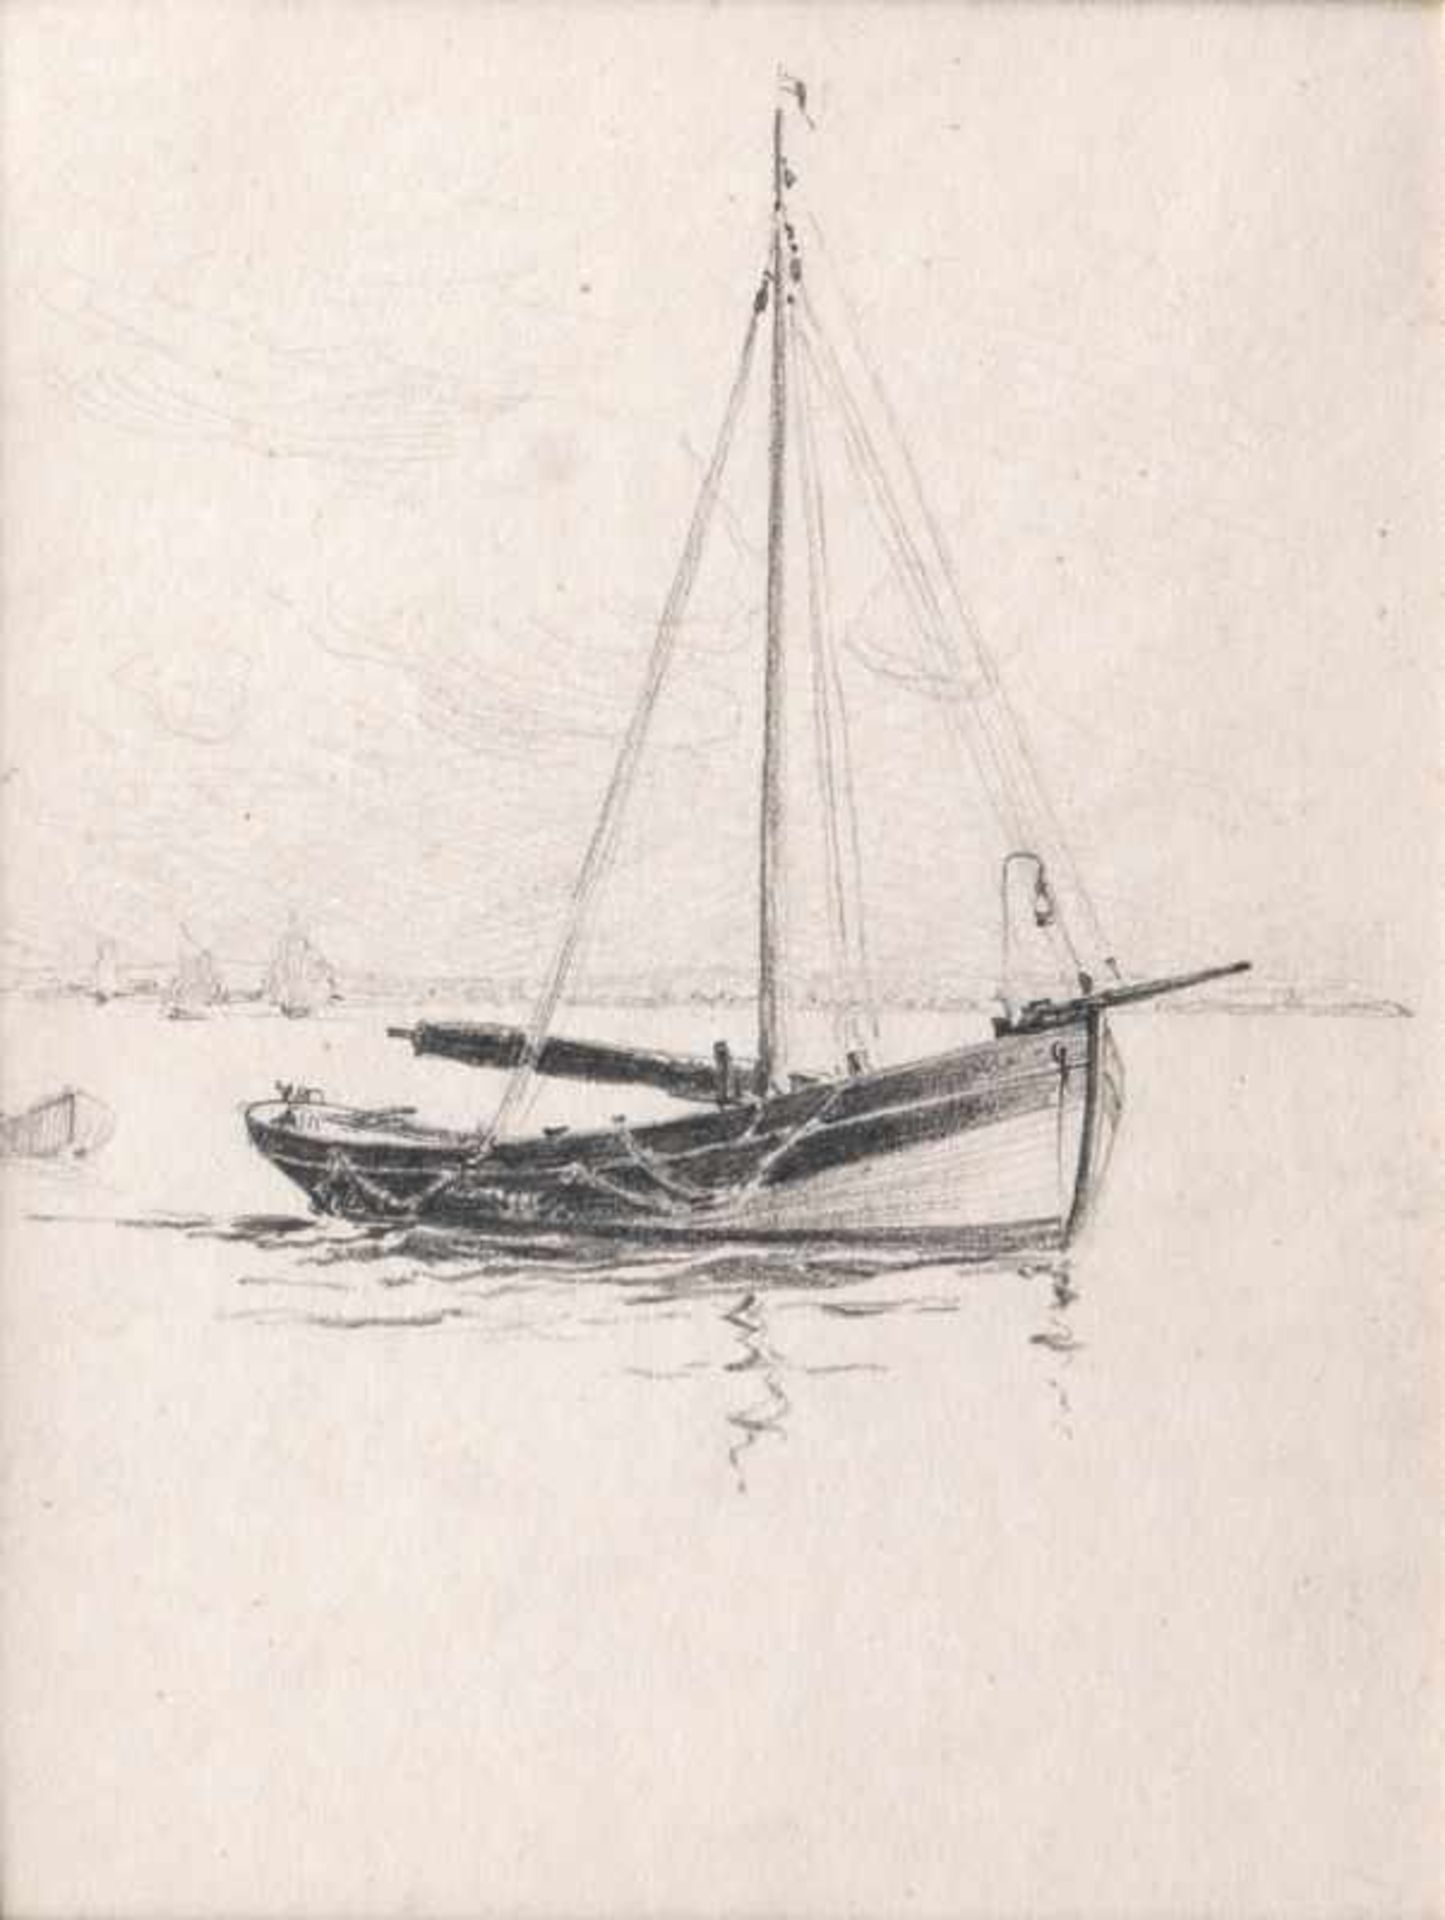 Themistokles von Eckenbrecher (Athen 1842 - Goslar 1921) Segelboot Bleistiftzeichnung, 18 x 13,5 cm,